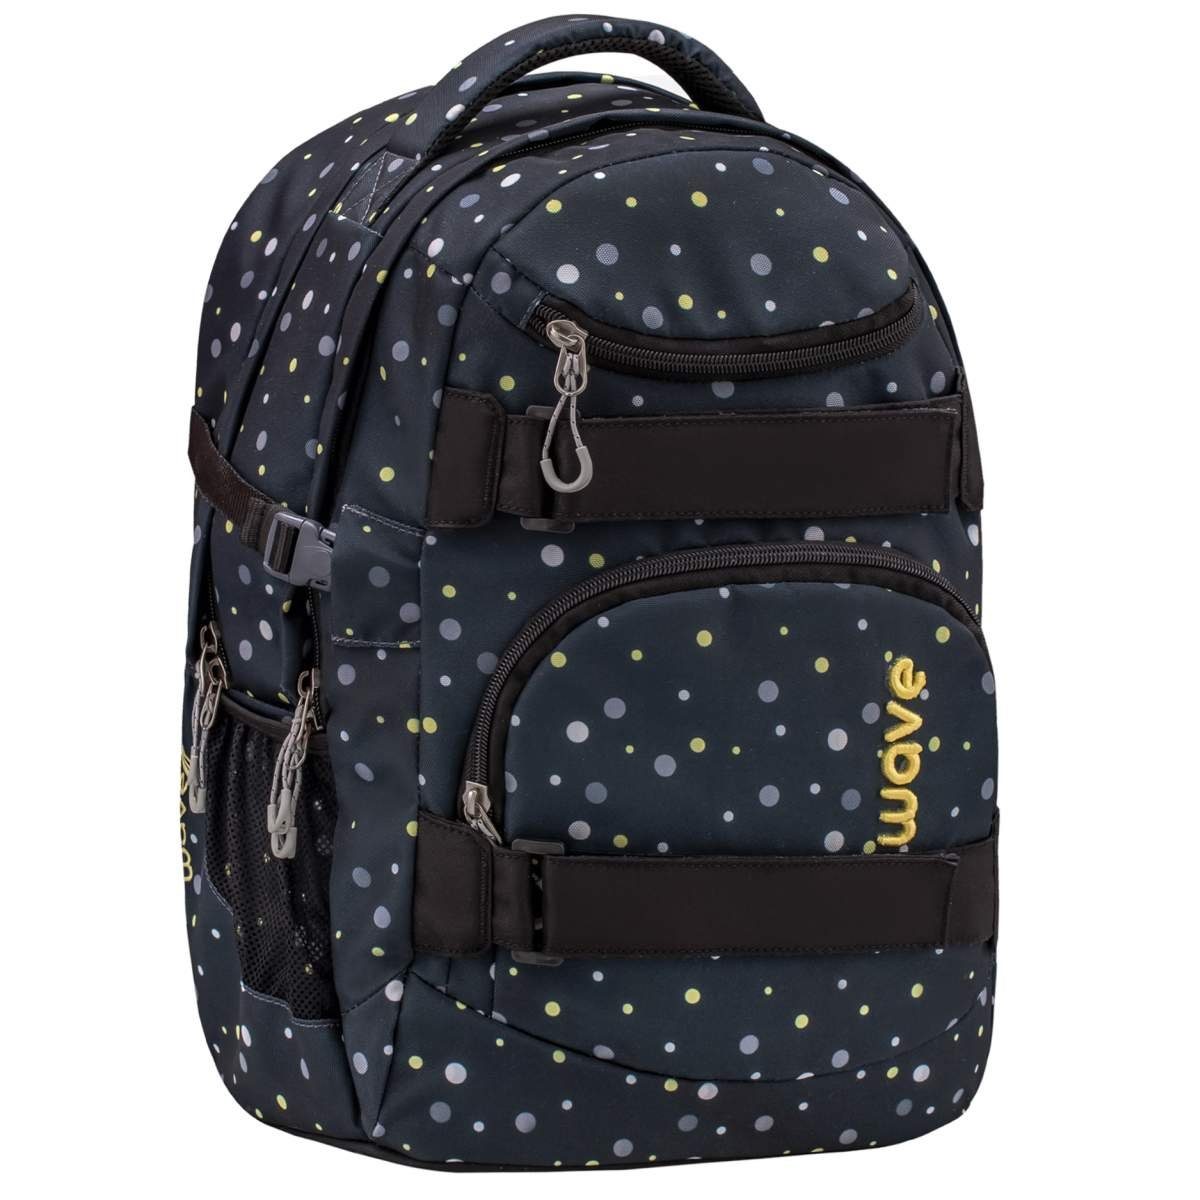 Wave Schulrucksack Infinity, Schultasche, ab 5. Klasse, weiterführende Schule, Teenager Black and Yellow Dots